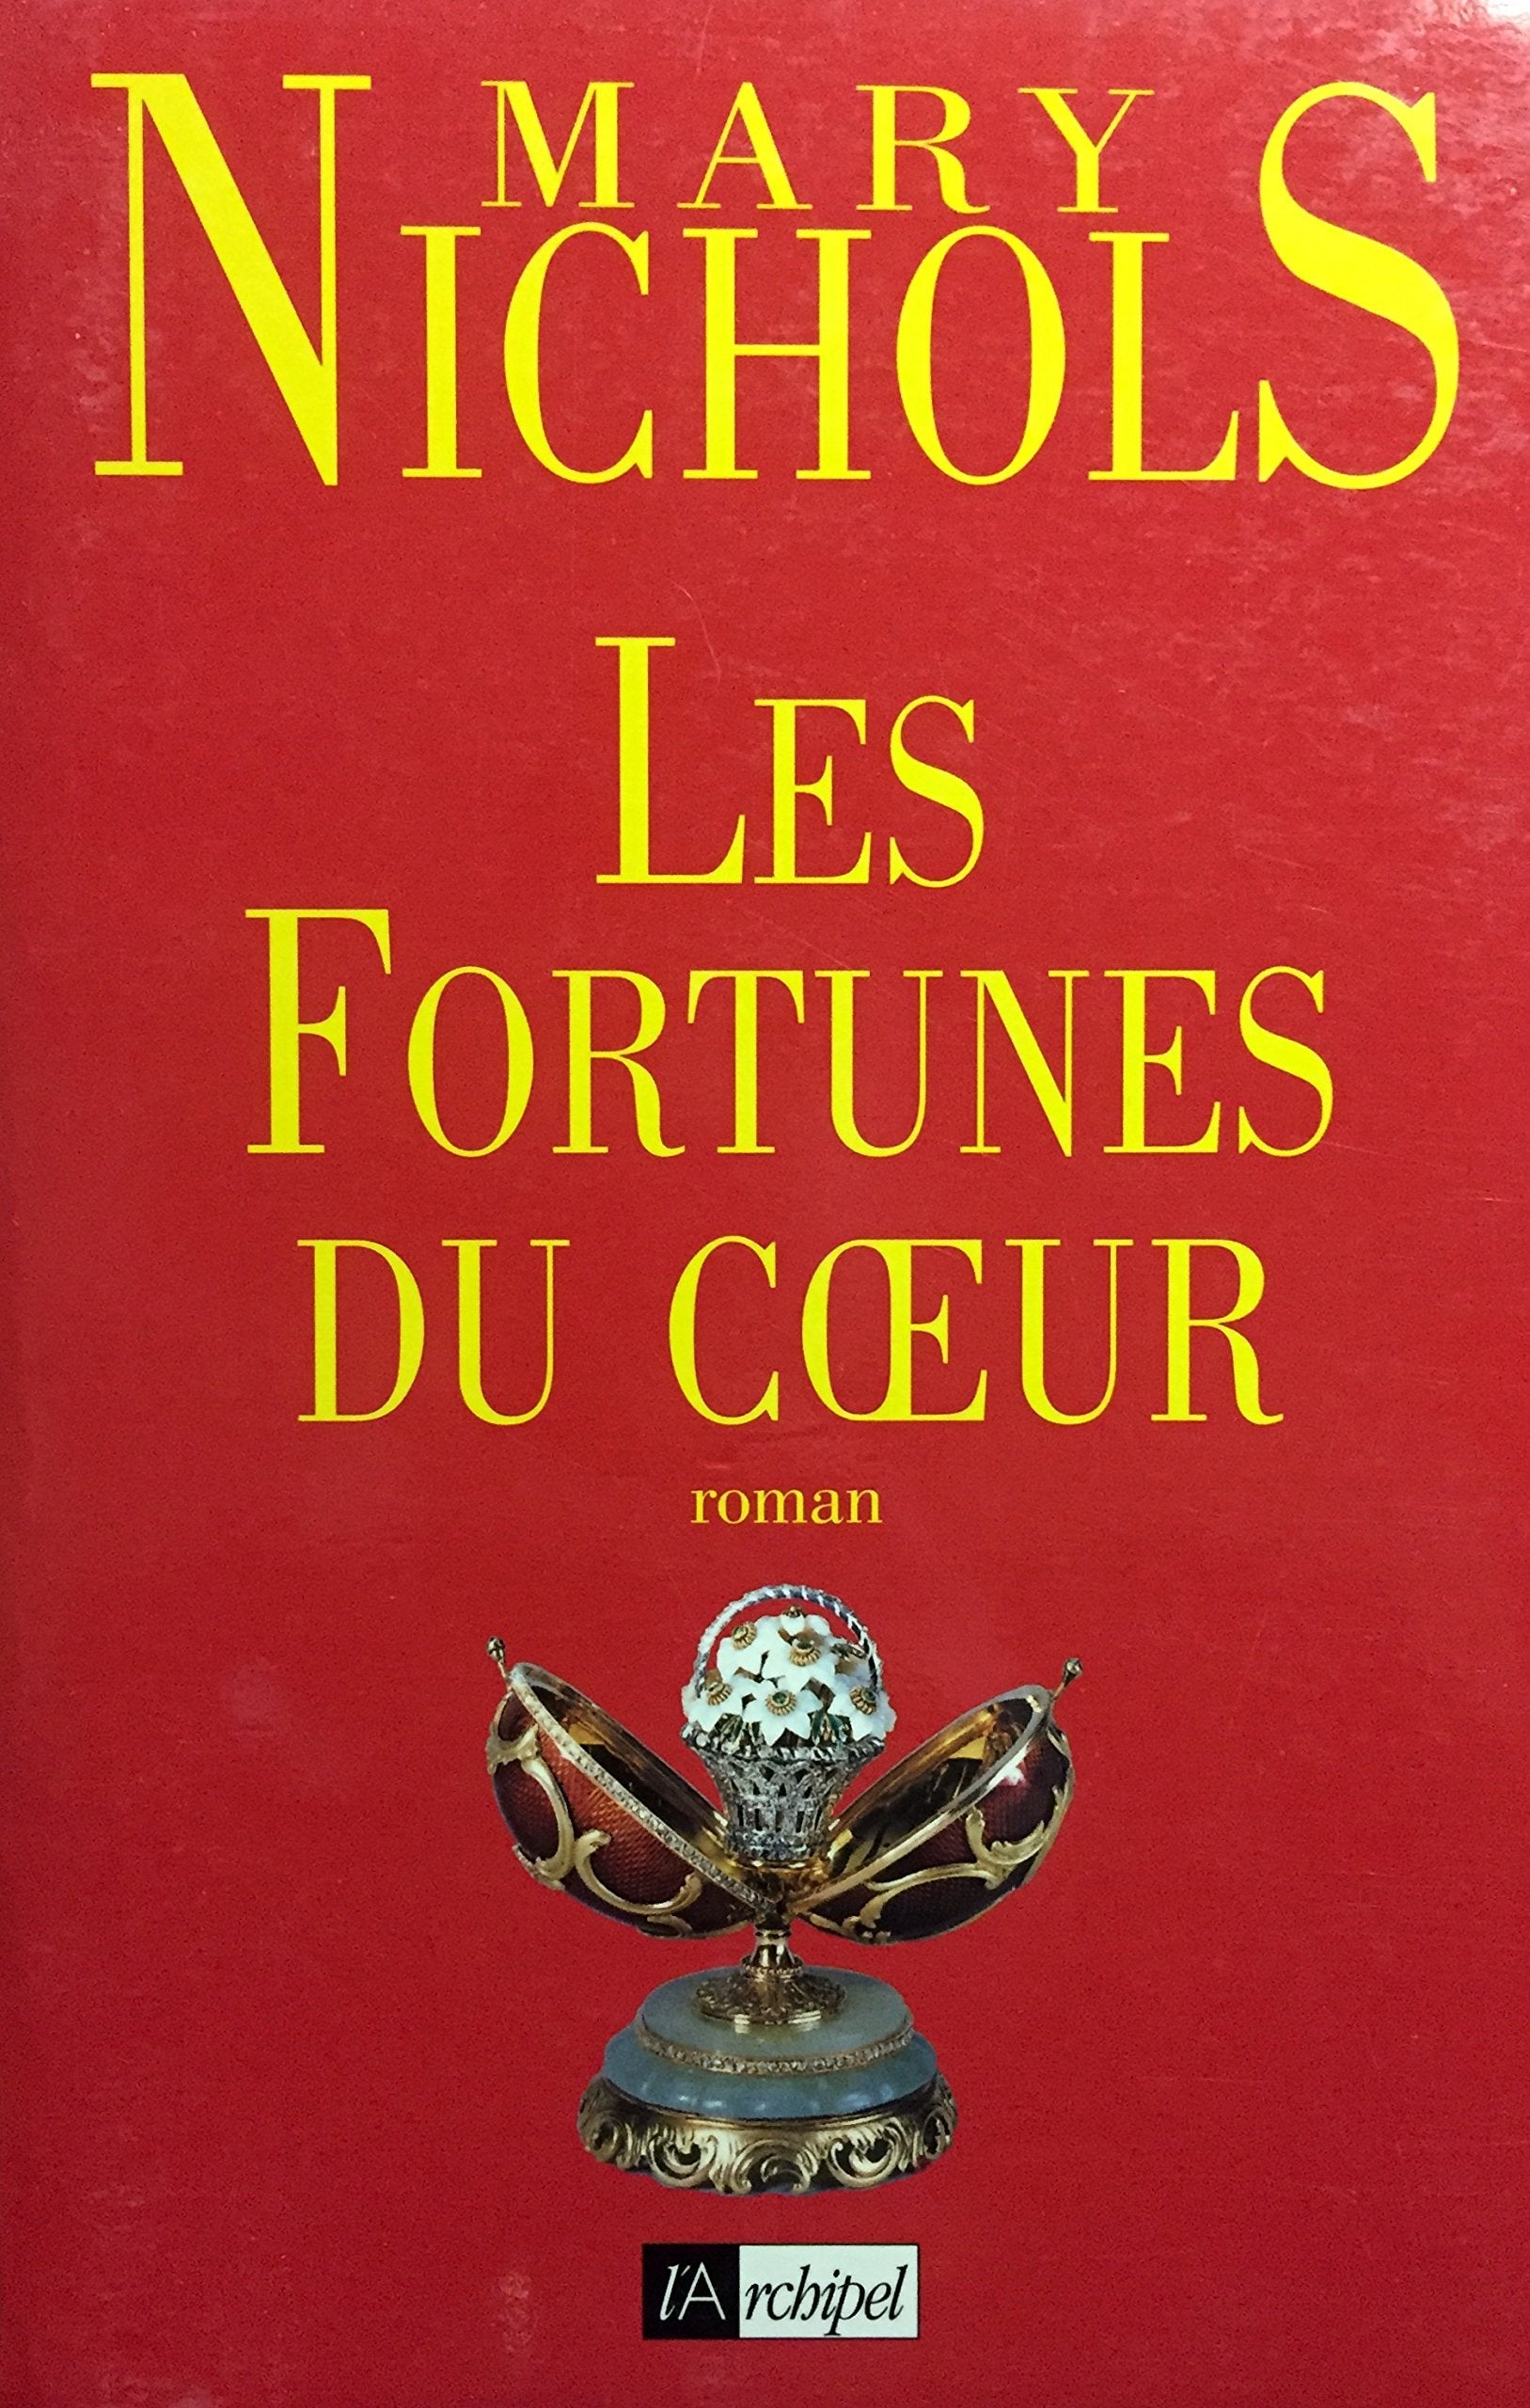 Livre ISBN 2909241955 Les fortunes du coeur (Mary Nichols)